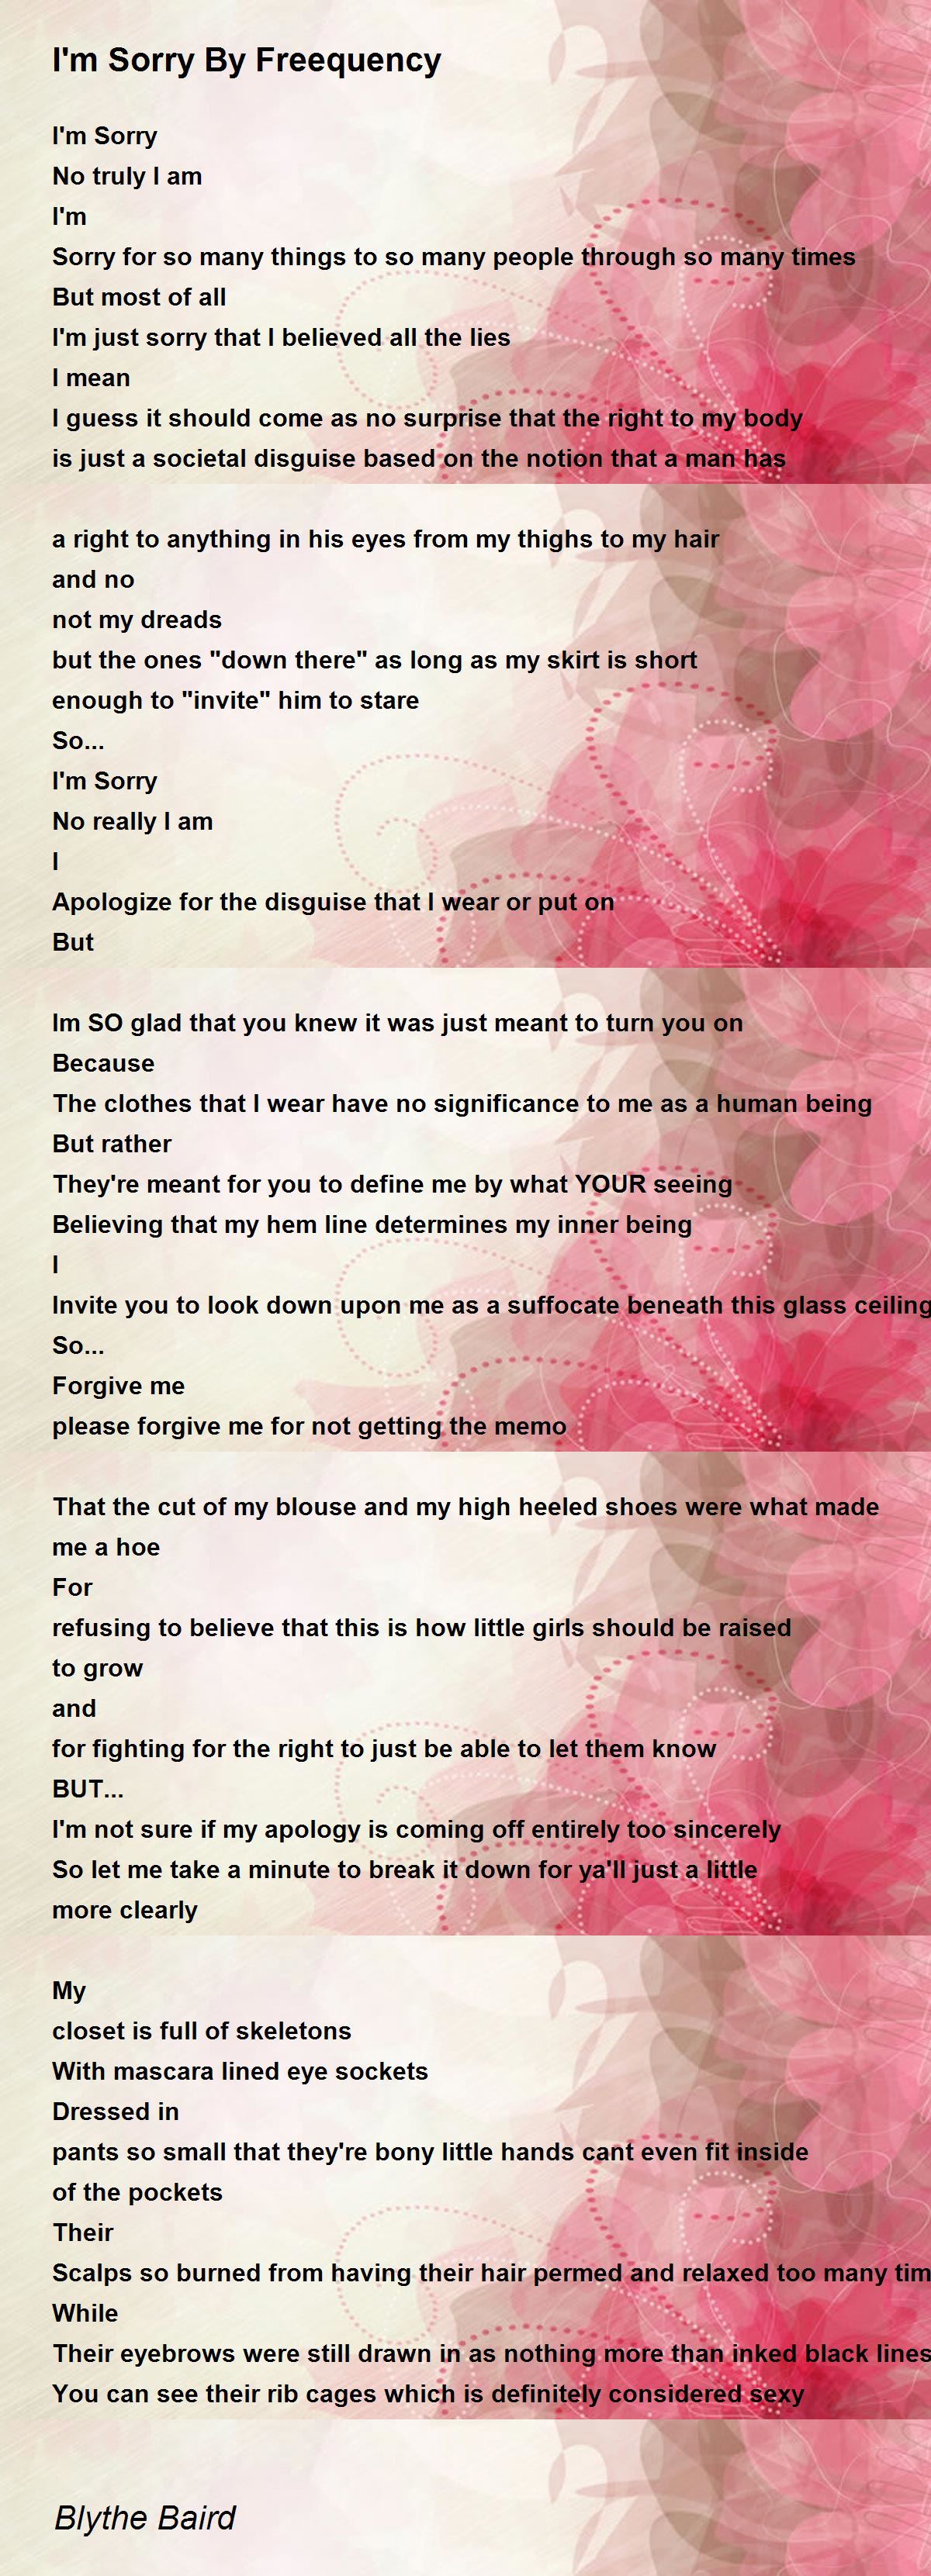 I'm Sorry By Freequency - I'm Sorry By Freequency Poem by Blythe Baird